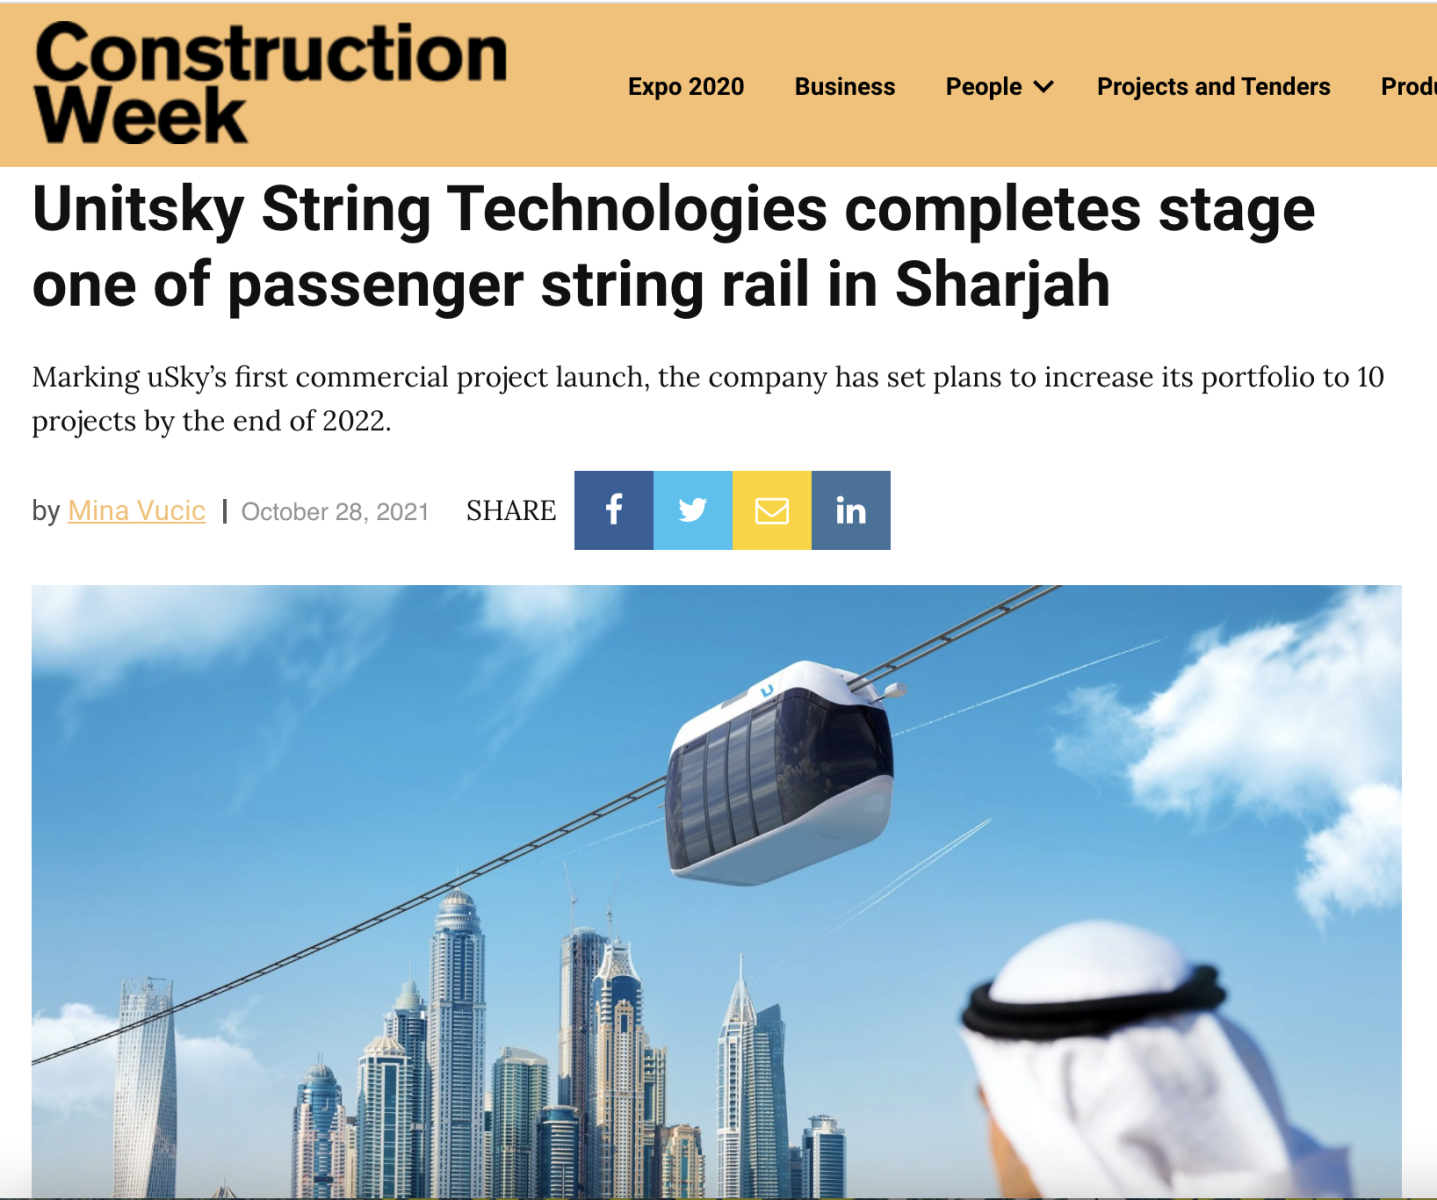 Unitsky String Technologies hoàn thành giai đoạn một của tuyến đường sắt chở khách ở Sharjah